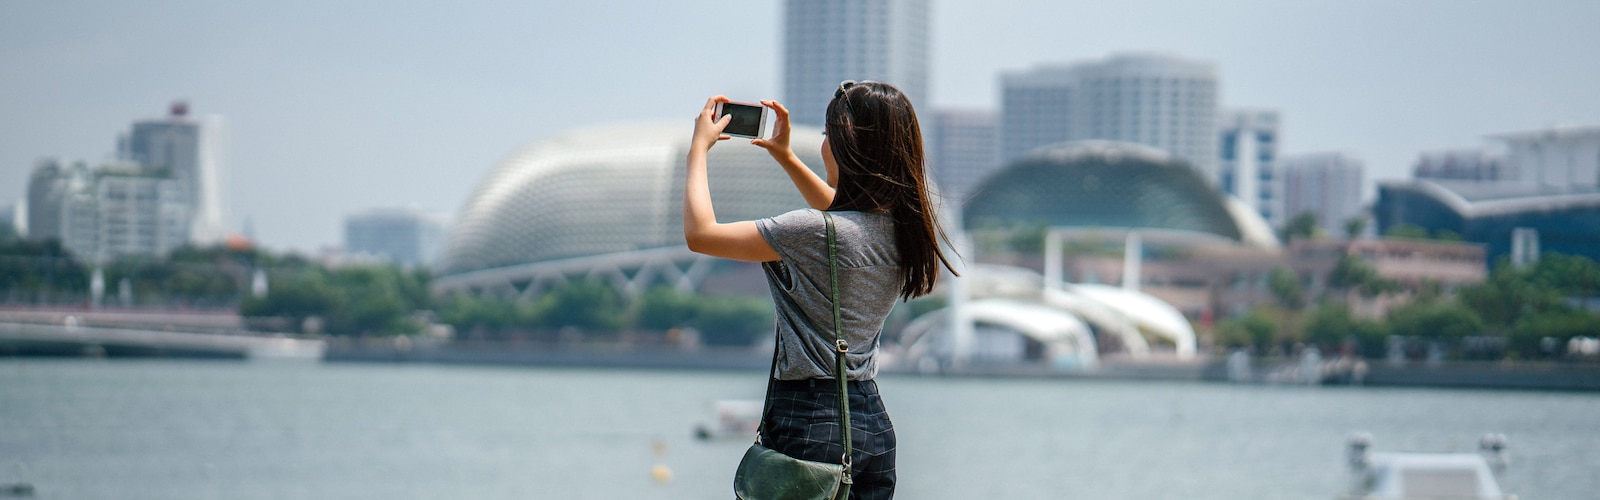 Eine Frau fotografiert mit einem iPhone die Aussicht über eine Stadt